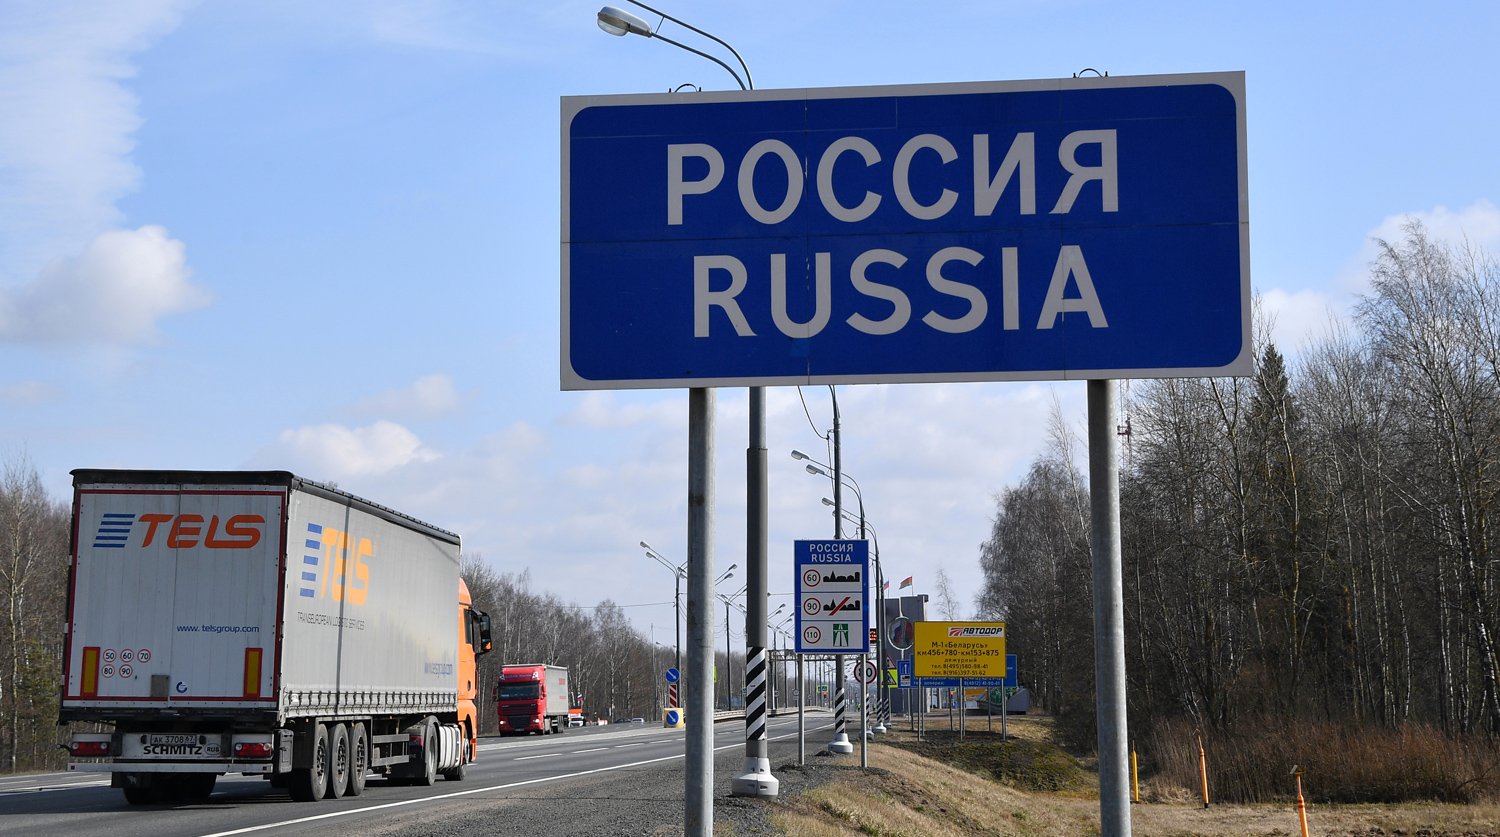 Չվճարված տուգանքներով օտարերկրյա բեռնատարներին և ավտոբուսներին արգելվել է Ռուսաստանից հեռանալը